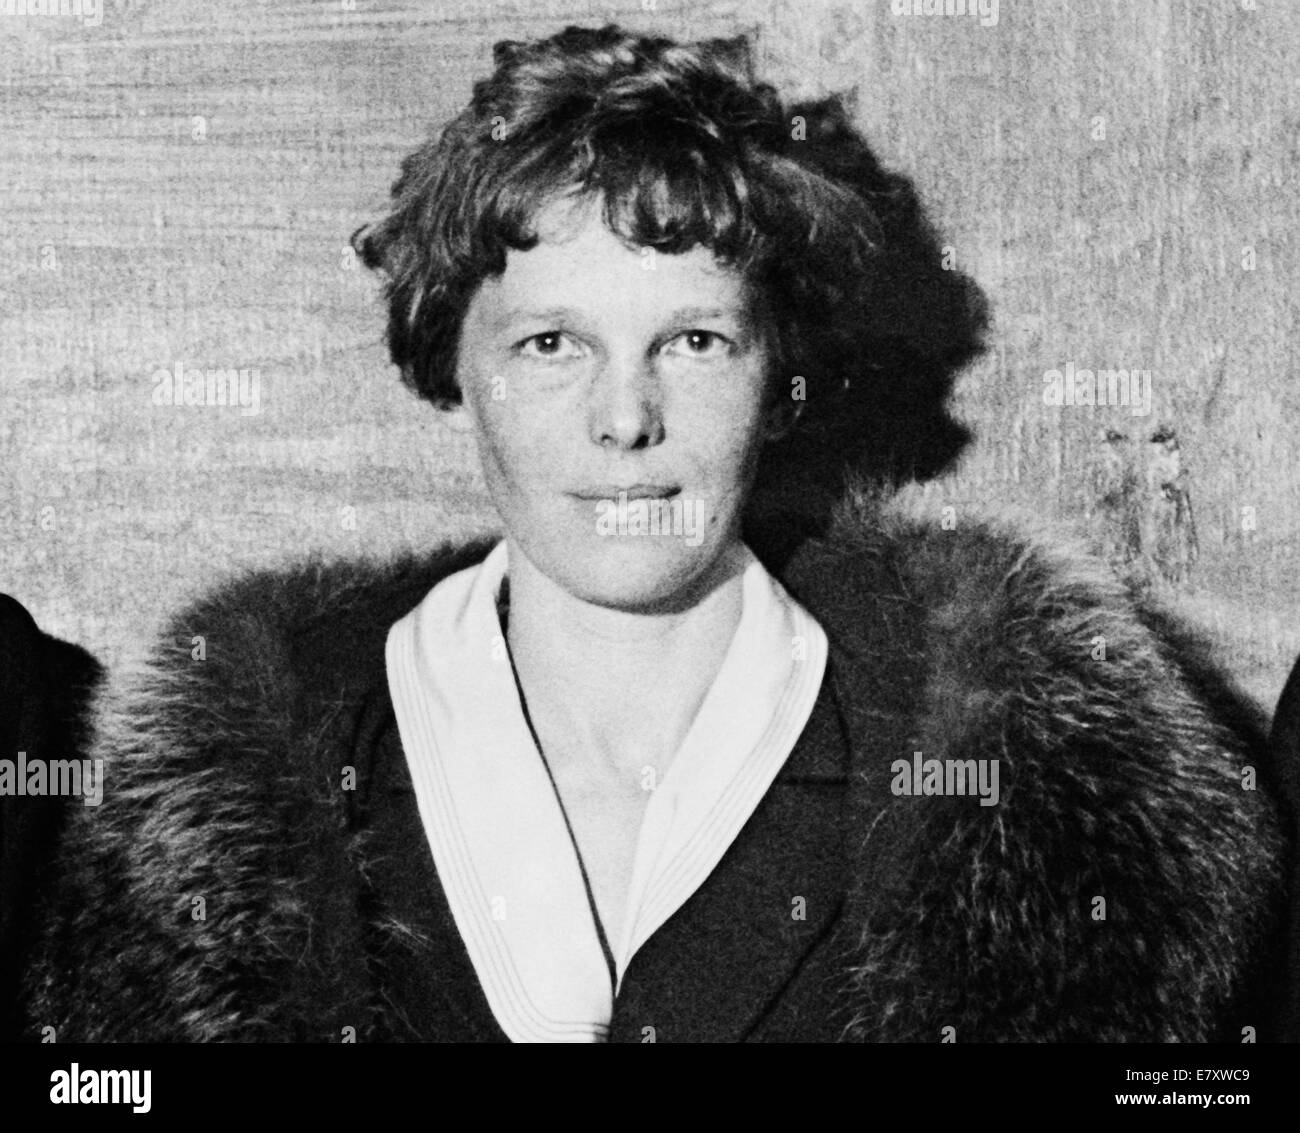 Foto d'epoca della pioniera e autrice dell'aviazione americana Amelia Earhart (1897 – dichiarata morta nel 1939) – Earthart e il suo navigatore Fred Noonan sono scomparsi nel 1937 mentre stava cercando di diventare la prima donna a completare un volo circumnavigazionale del globo. Foto scattata nel 1932. Foto Stock